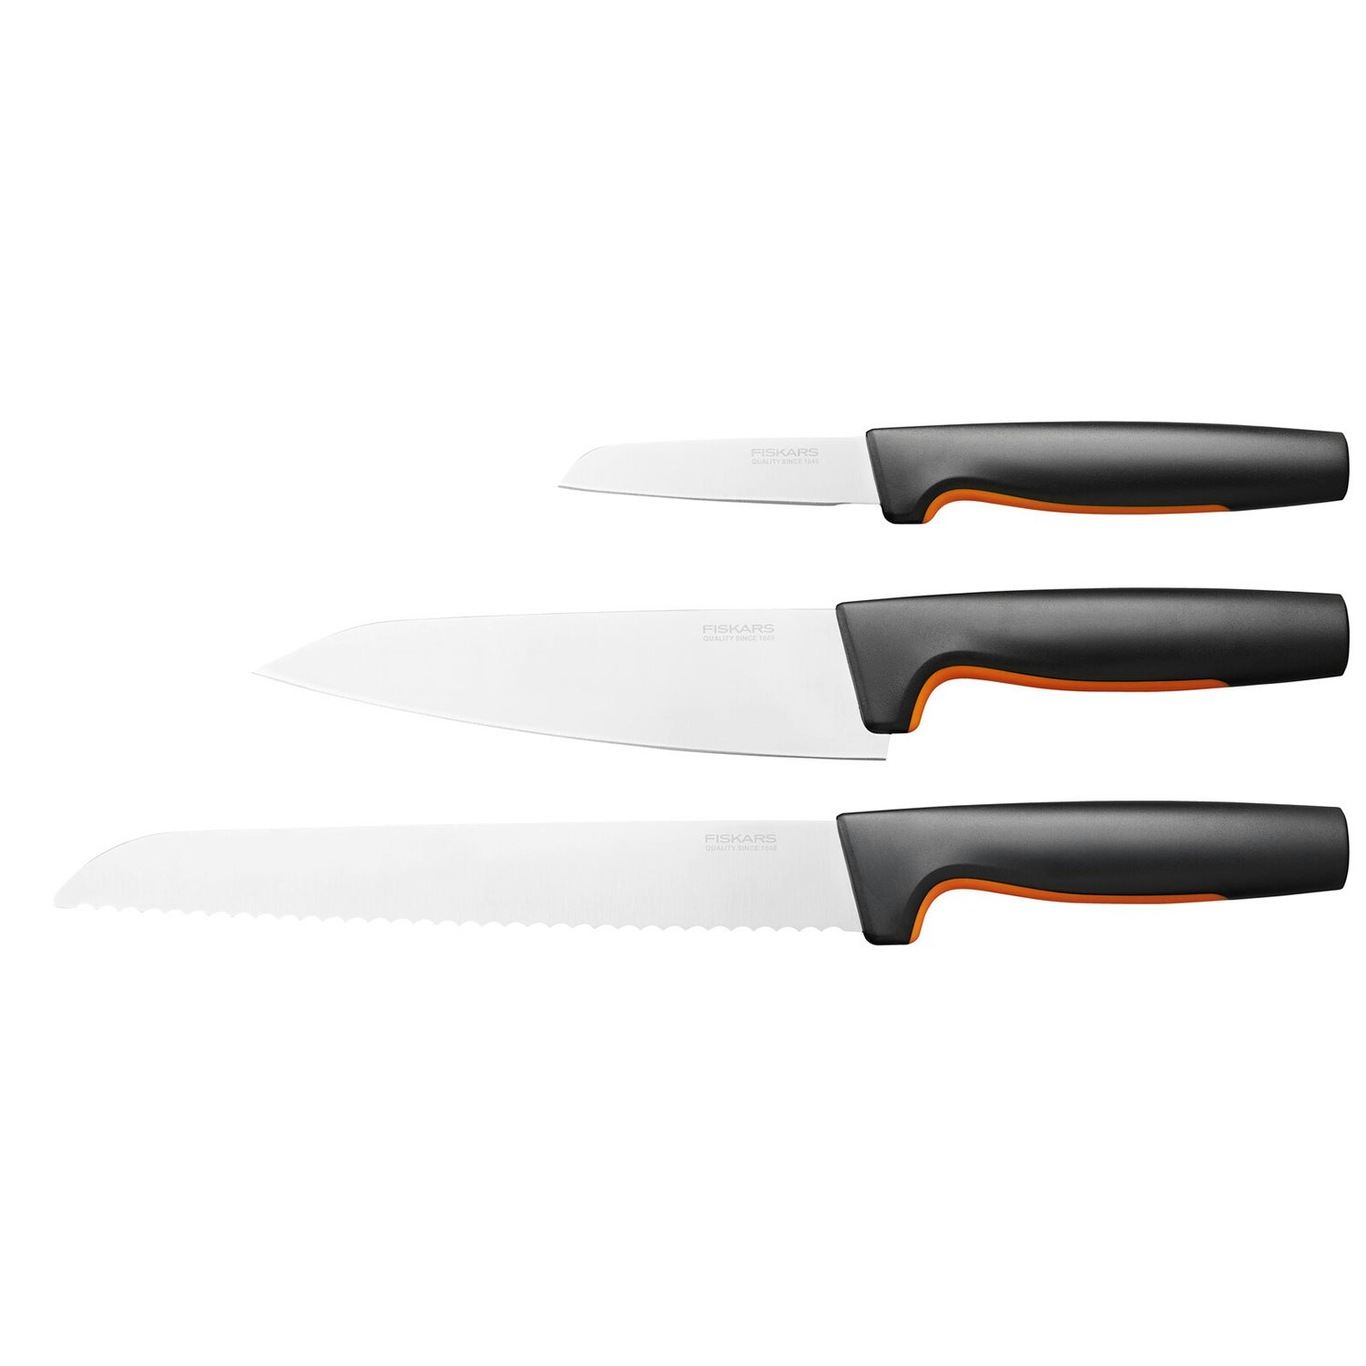 https://royaldesign.com/image/2/fiskars-functional-form-knife-set-3-pack-0?w=800&quality=80